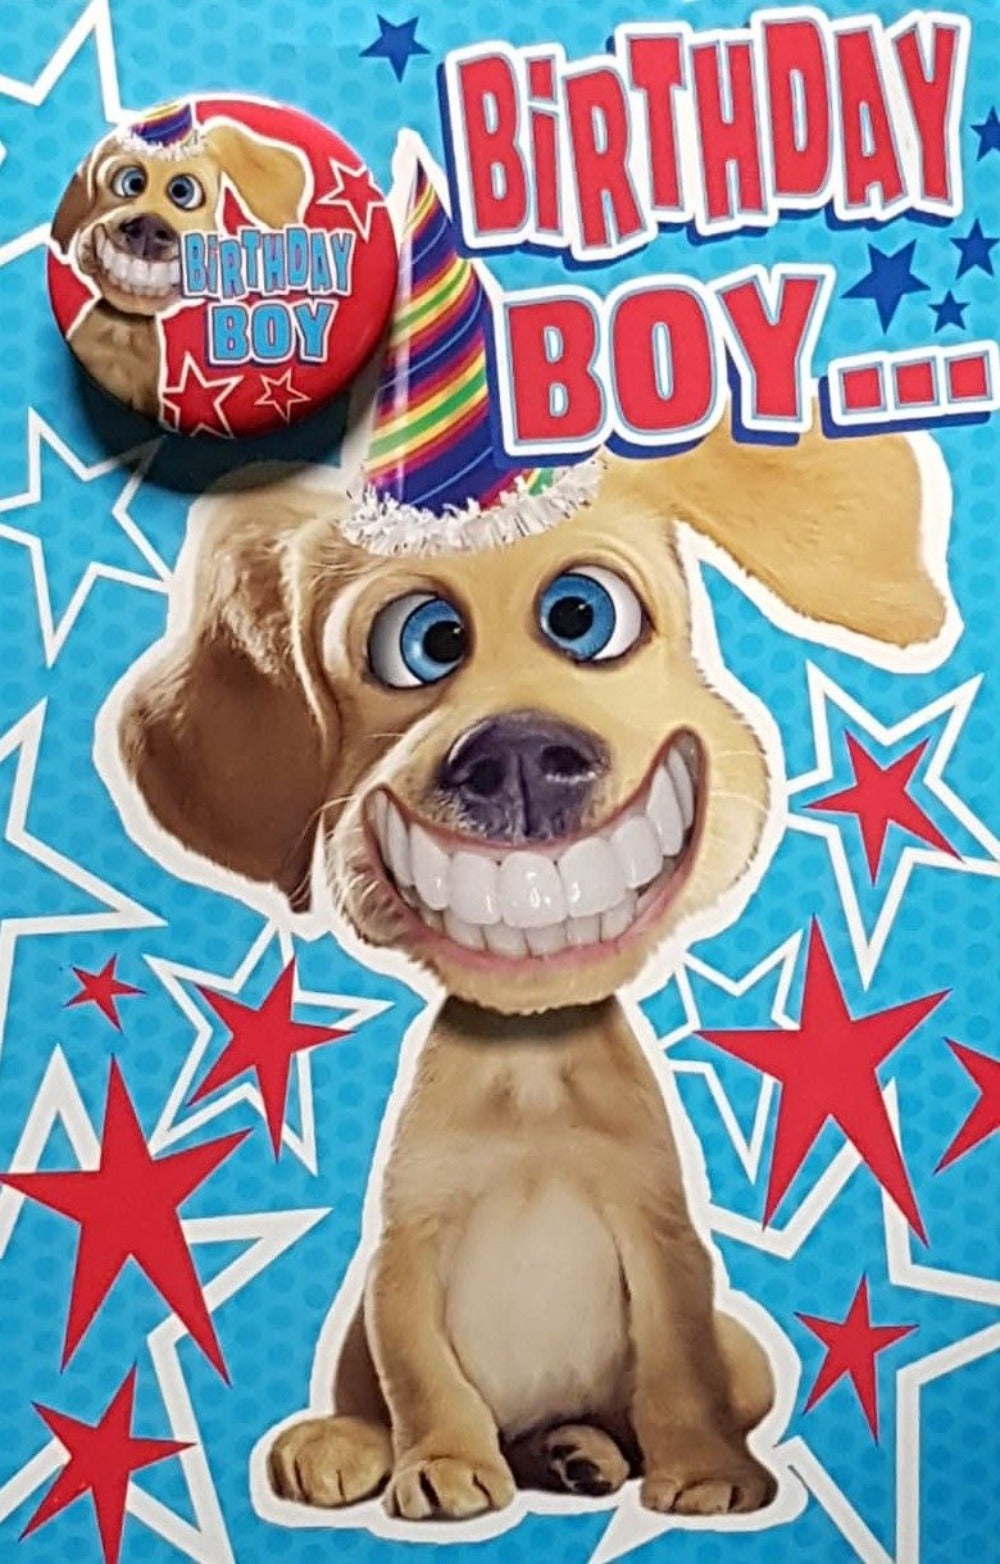 Birthday Card - A Dog With A Big Smile & A Birthday Boy Badge